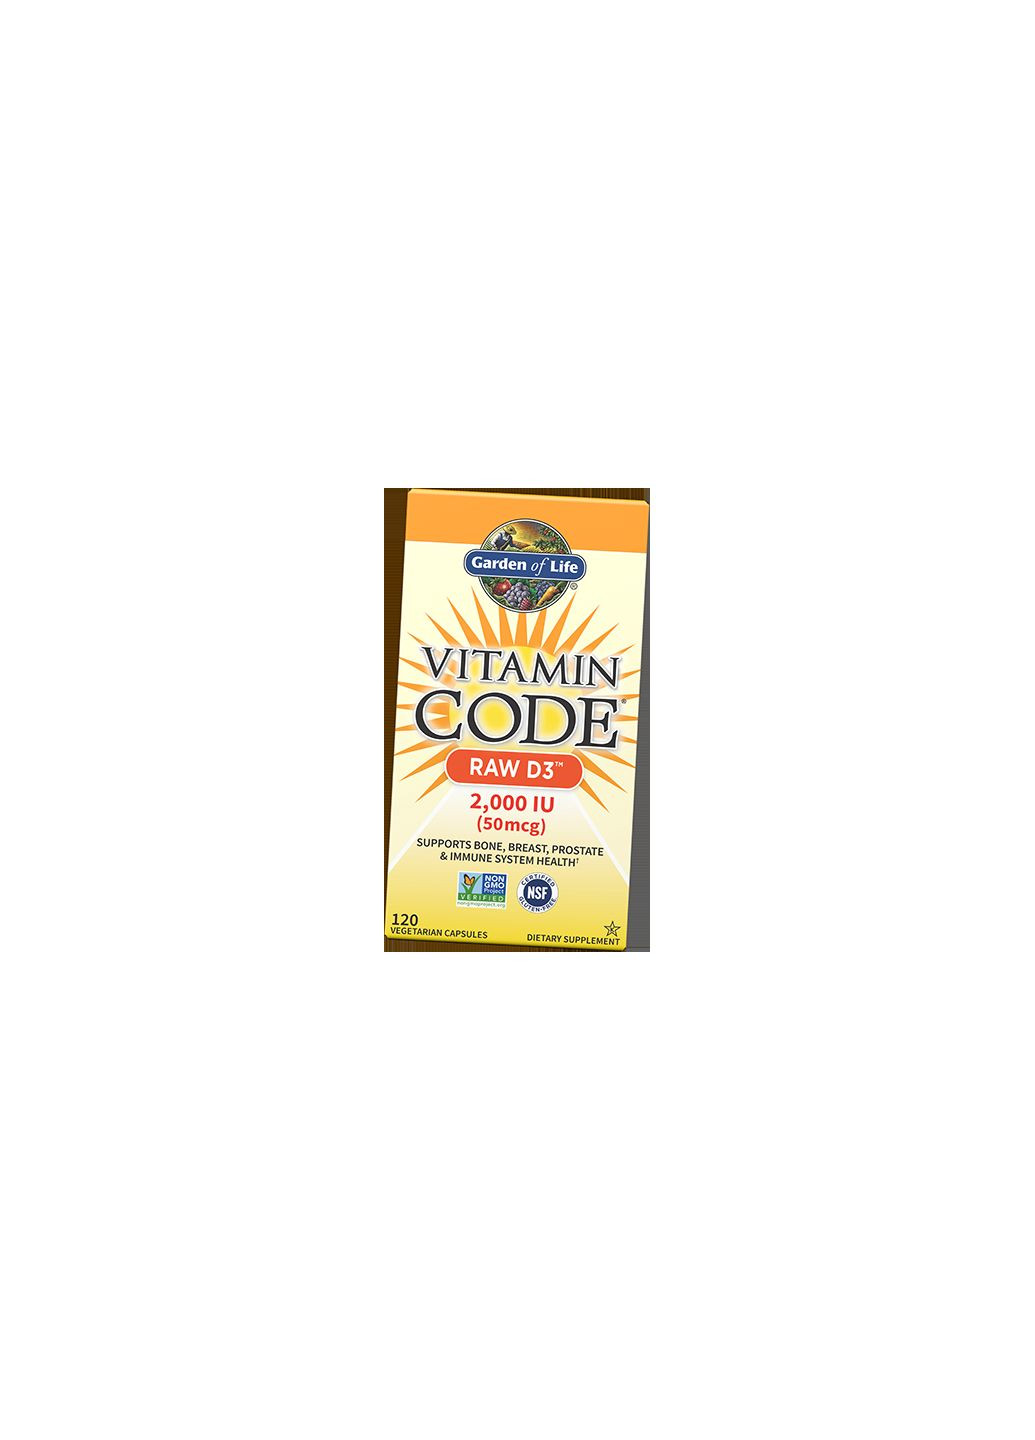 Сирий Вітамін Д3, Vitamin Code Raw D3 2000, 60вегкапс 36473012, (36473012) Garden of Life (293255951)